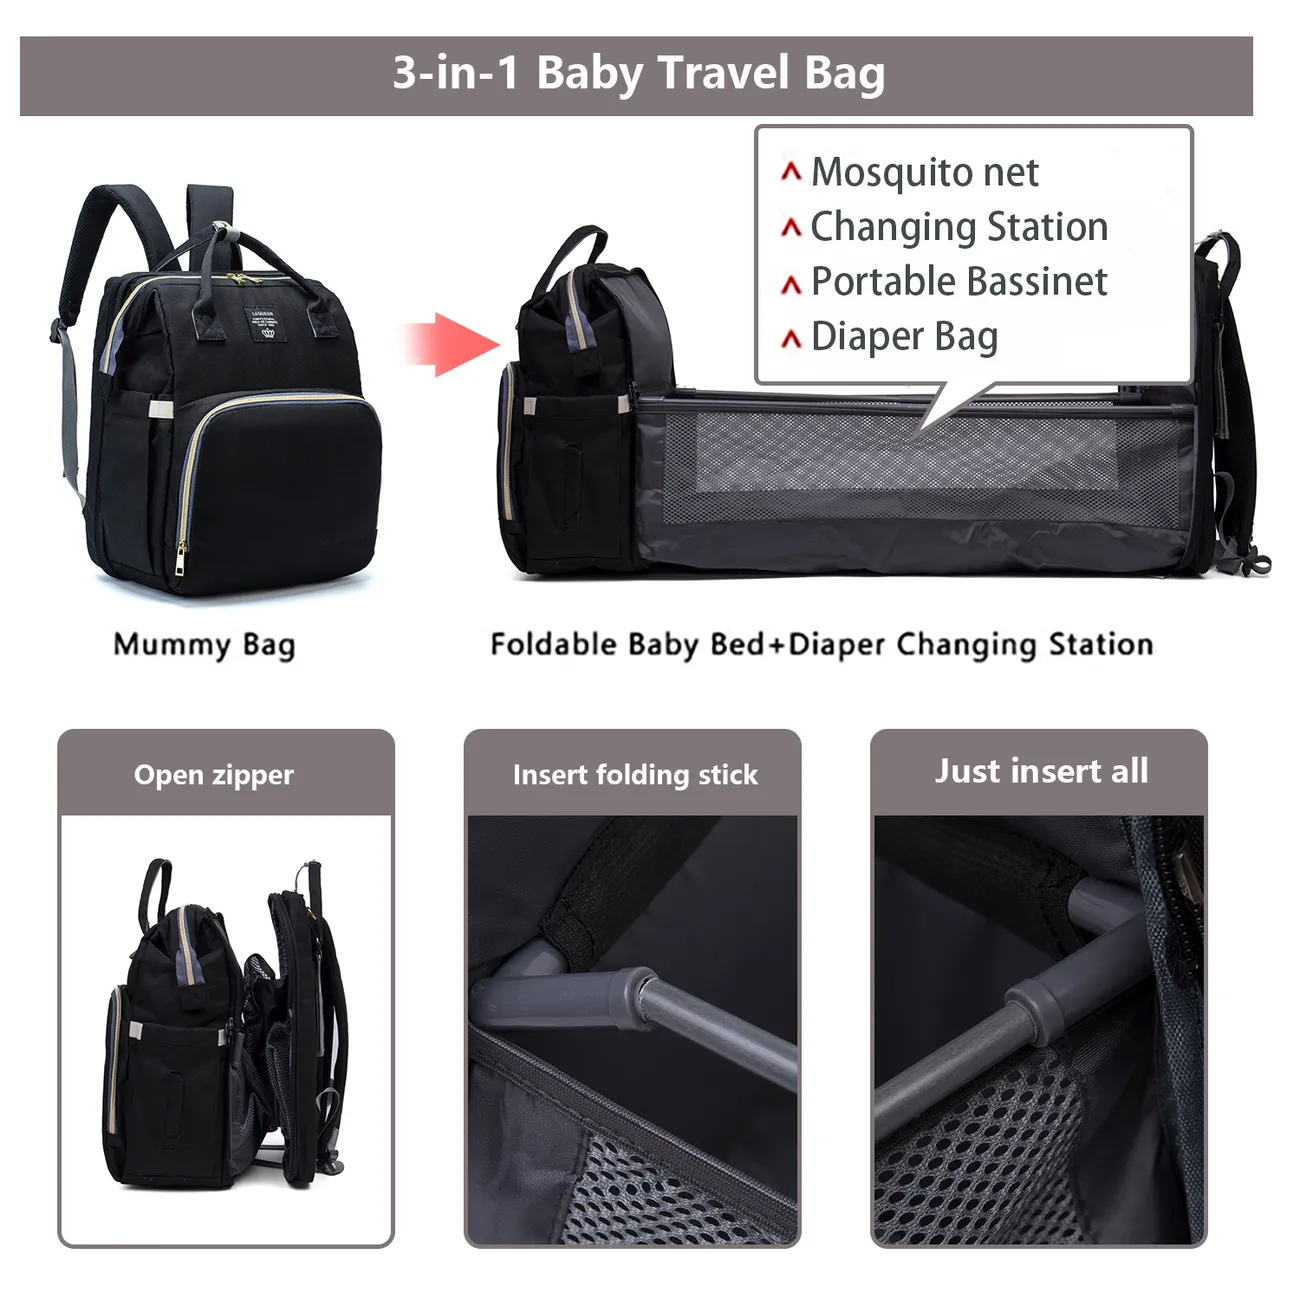 多色尿布袋背包大容量耐用孕婦旅行背包嬰兒護理帶換尿布墊 黑色 big image 1